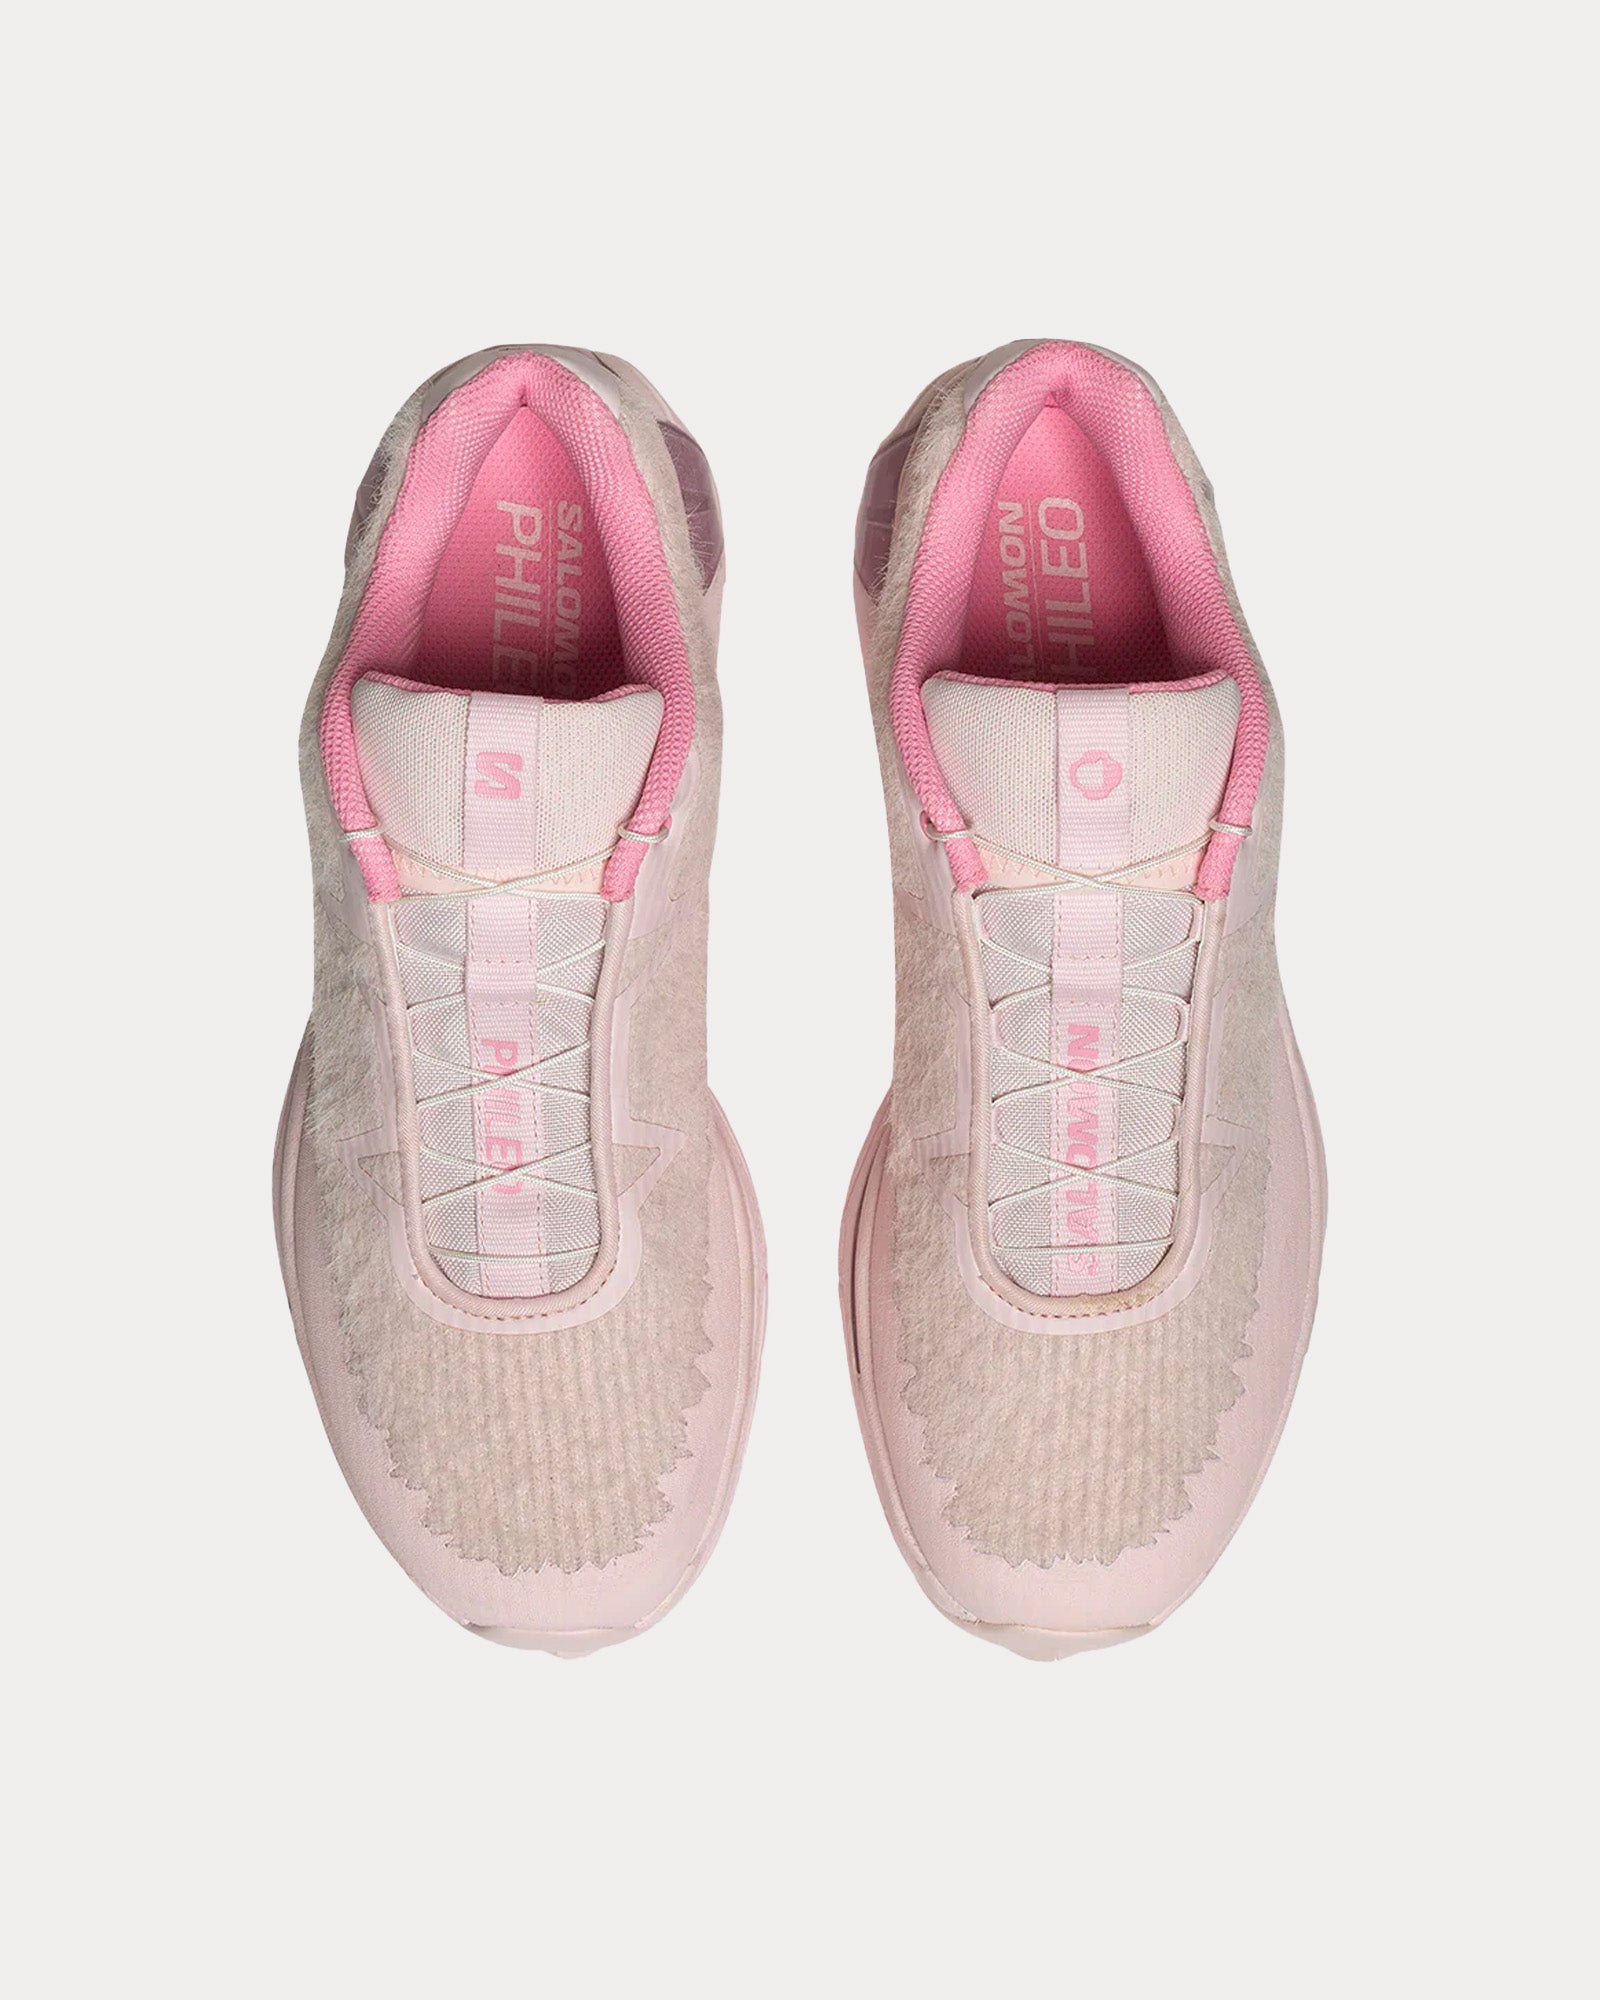 Salomon x Phileo - XT-SP1  Prism Pink / Cradle Pink Low Top Sneakers